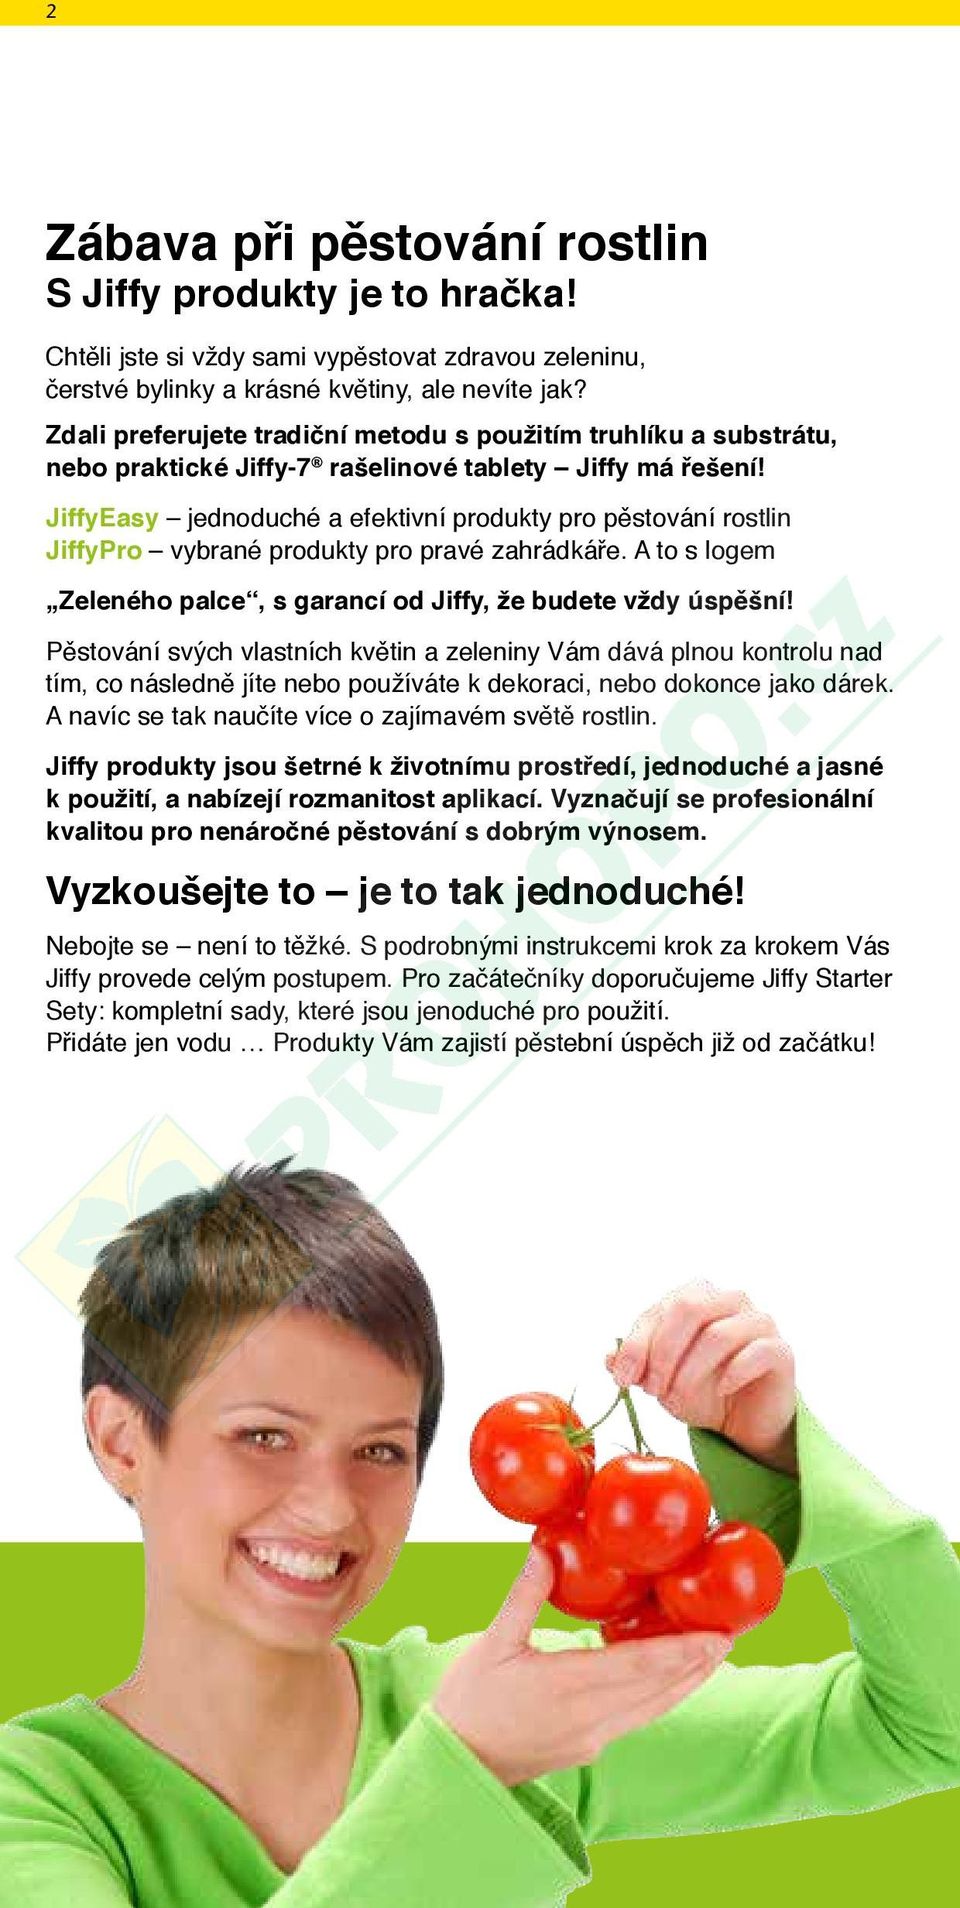 JiffyEasy jednoduché a efektivní produkty pro pěstování rostlin JiffyPro vybrané produkty pro pravé zahrádkáře. A to s logem Zeleného palce, s garancí od Jiffy, že budete vždy úspěšní!